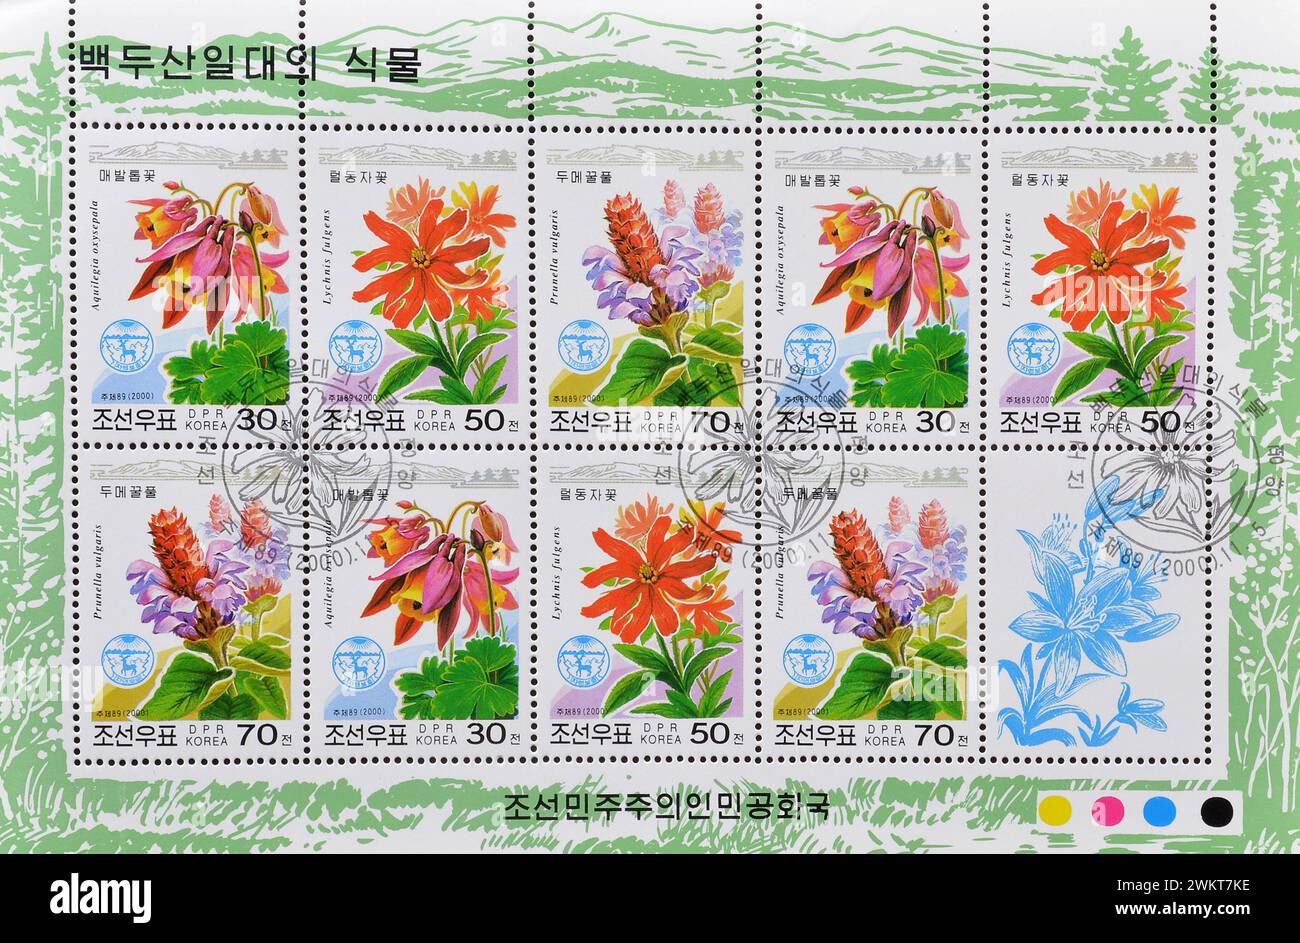 Foglio ricordo con francobollo cancellato stampato dalla Corea del Nord che mostra vari fiori del Monte Paektu, circa 2000. Foto Stock